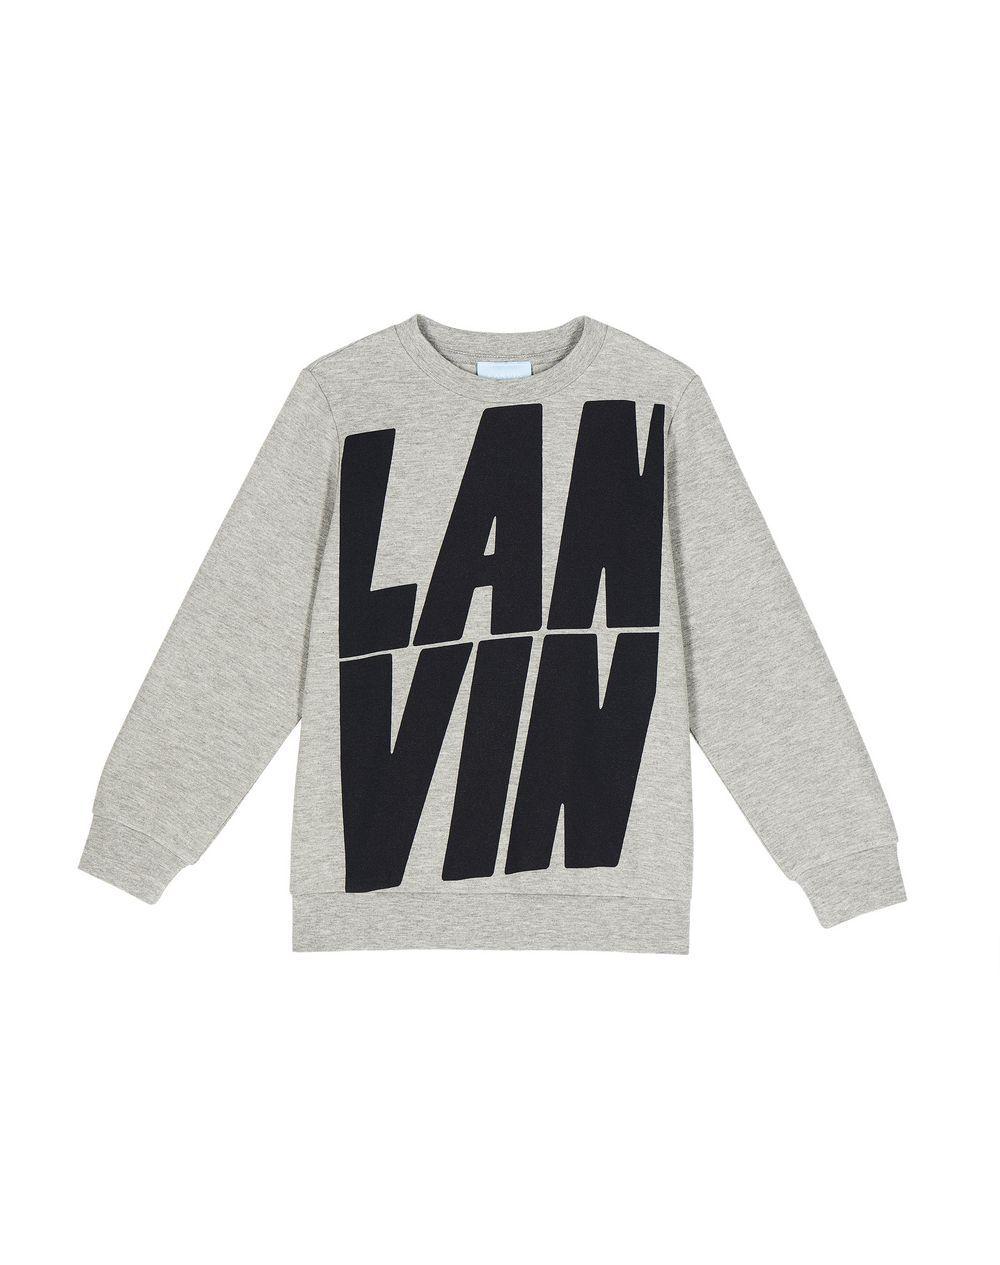 Lanvin Logo - Lanvin LANVIN LOGO SWEATSHIRT , Knitwear Sweater Childrenswear ...